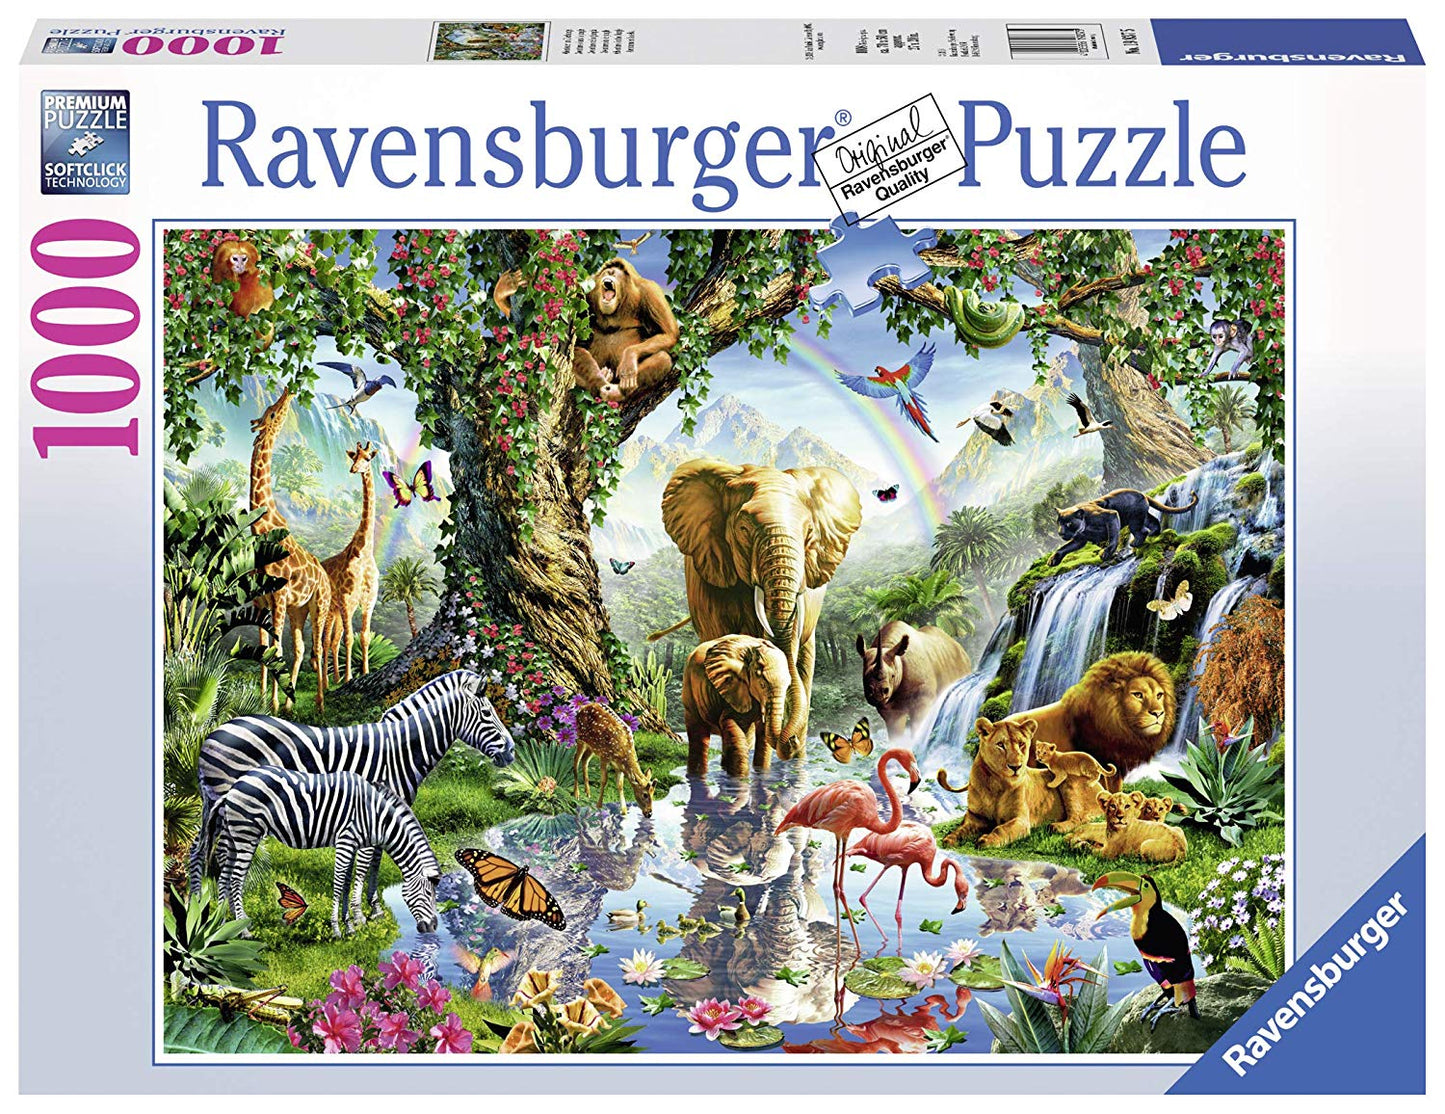 Avonturen in de jungle van Jan Patrik, puzzel van 1000 stukjes